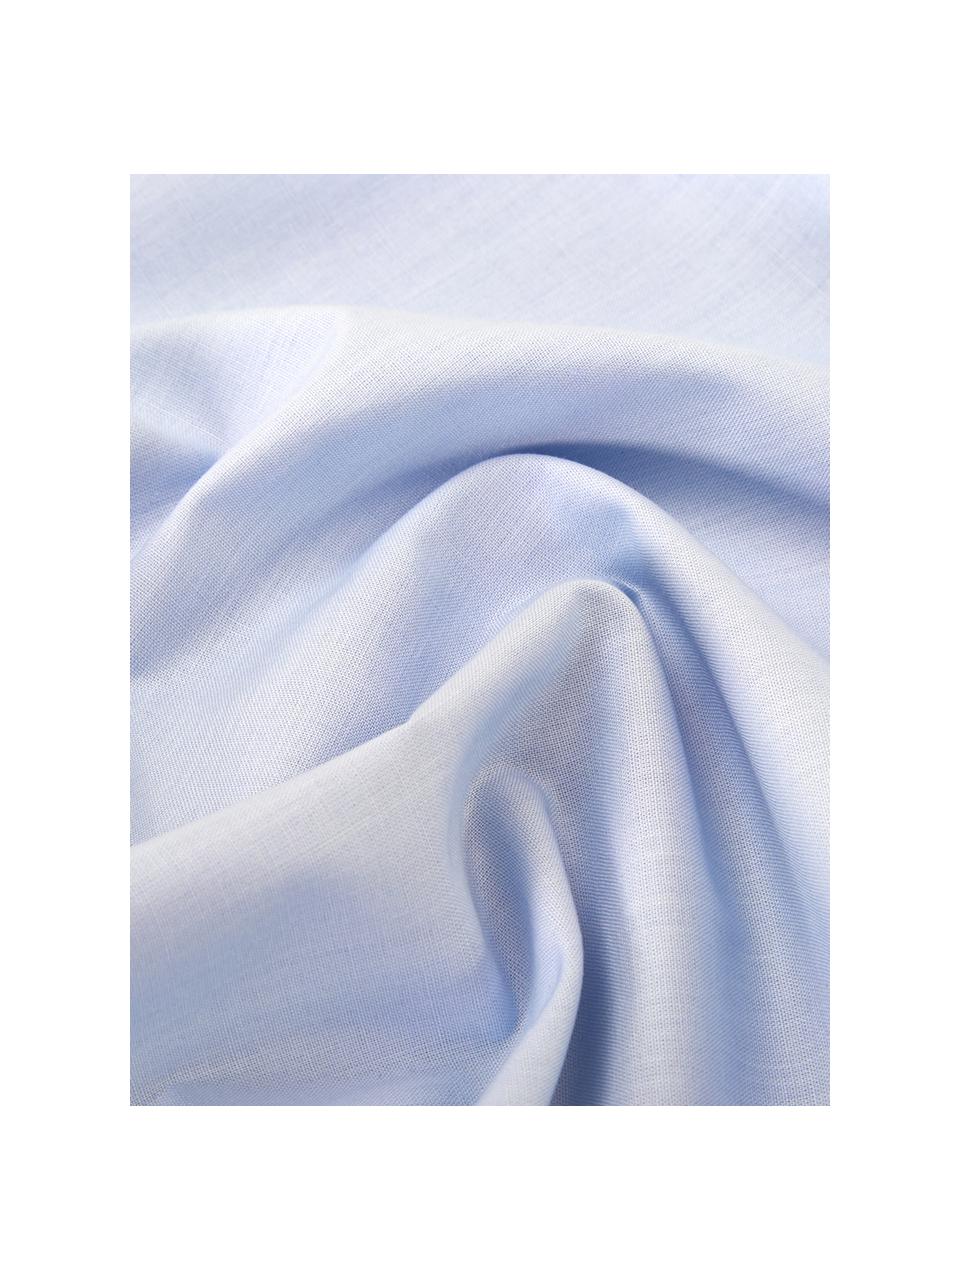 Bavlněné povlečení Weekend, 100% bavlna

Hustota tkaniny 145 TC, standardní gramáž

Bavlněné povlečení je měkké na dotek, dobře absorbuje vlhkost a je vhodné pro alergiky., Světle modrá, 140 x 200 cm + 1 polštář 80 x 80 cm